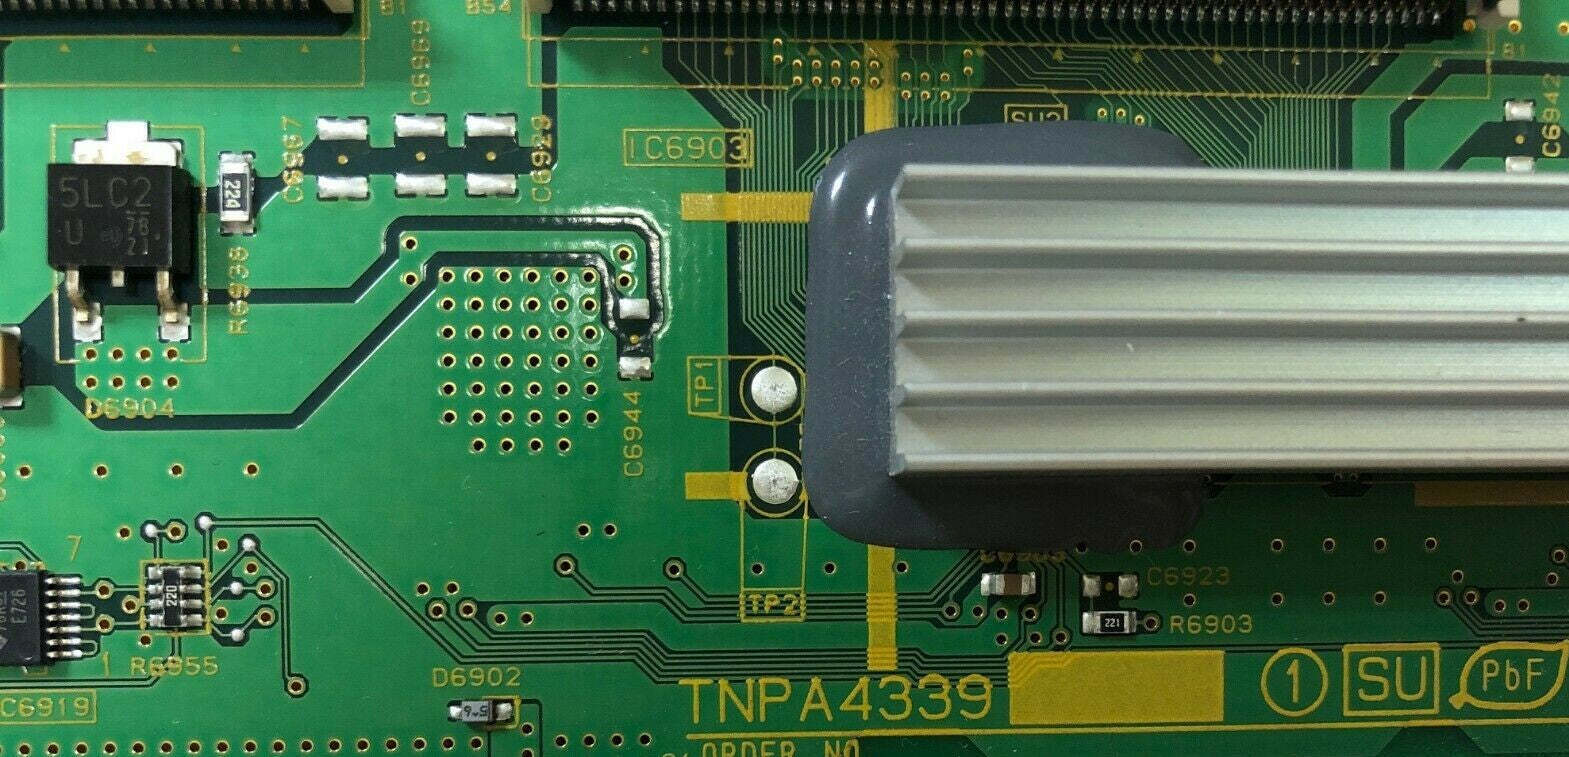 TNPA4339 buffer board